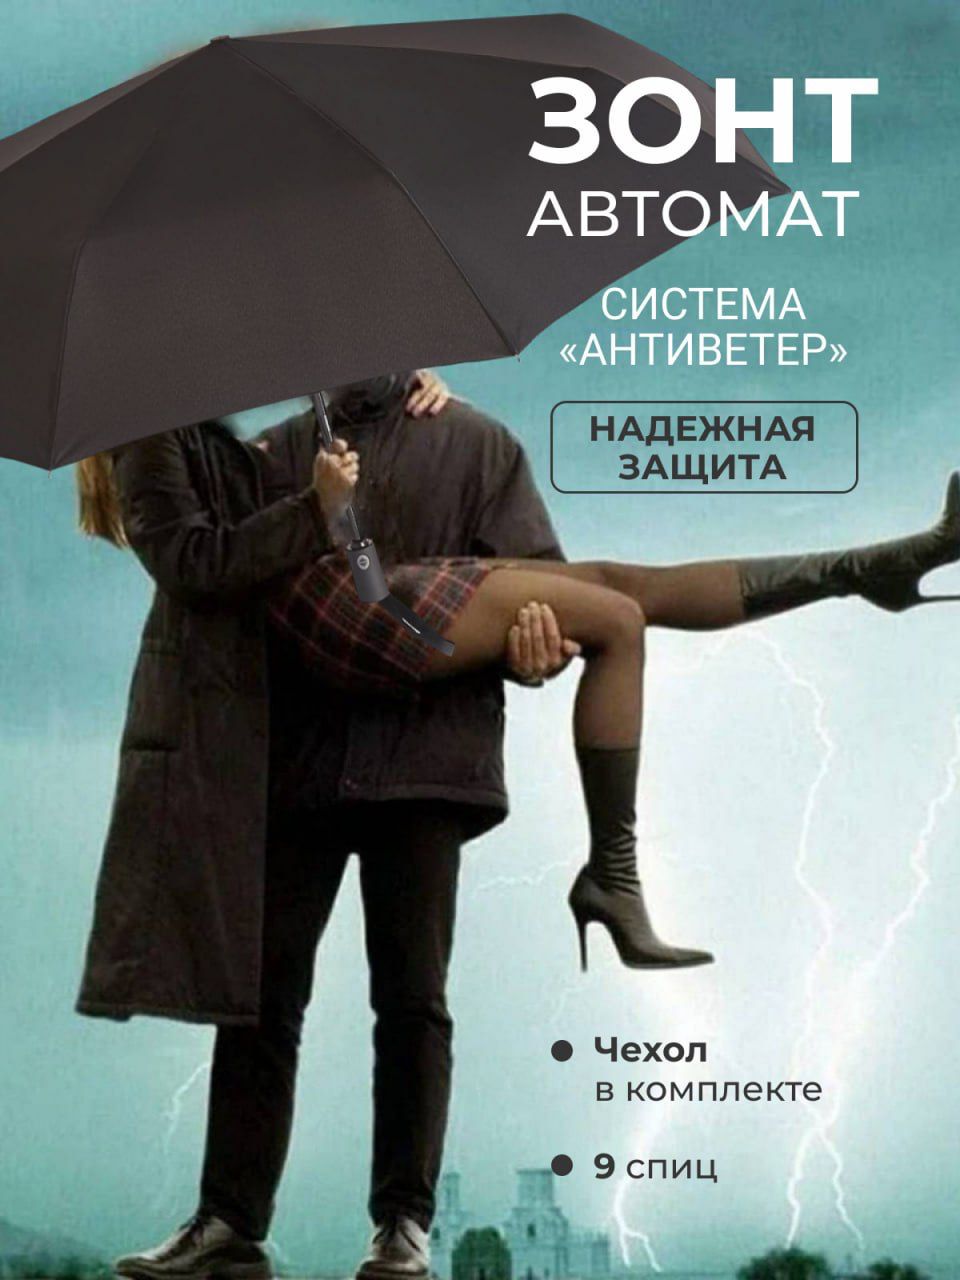 Пара под зонтиком